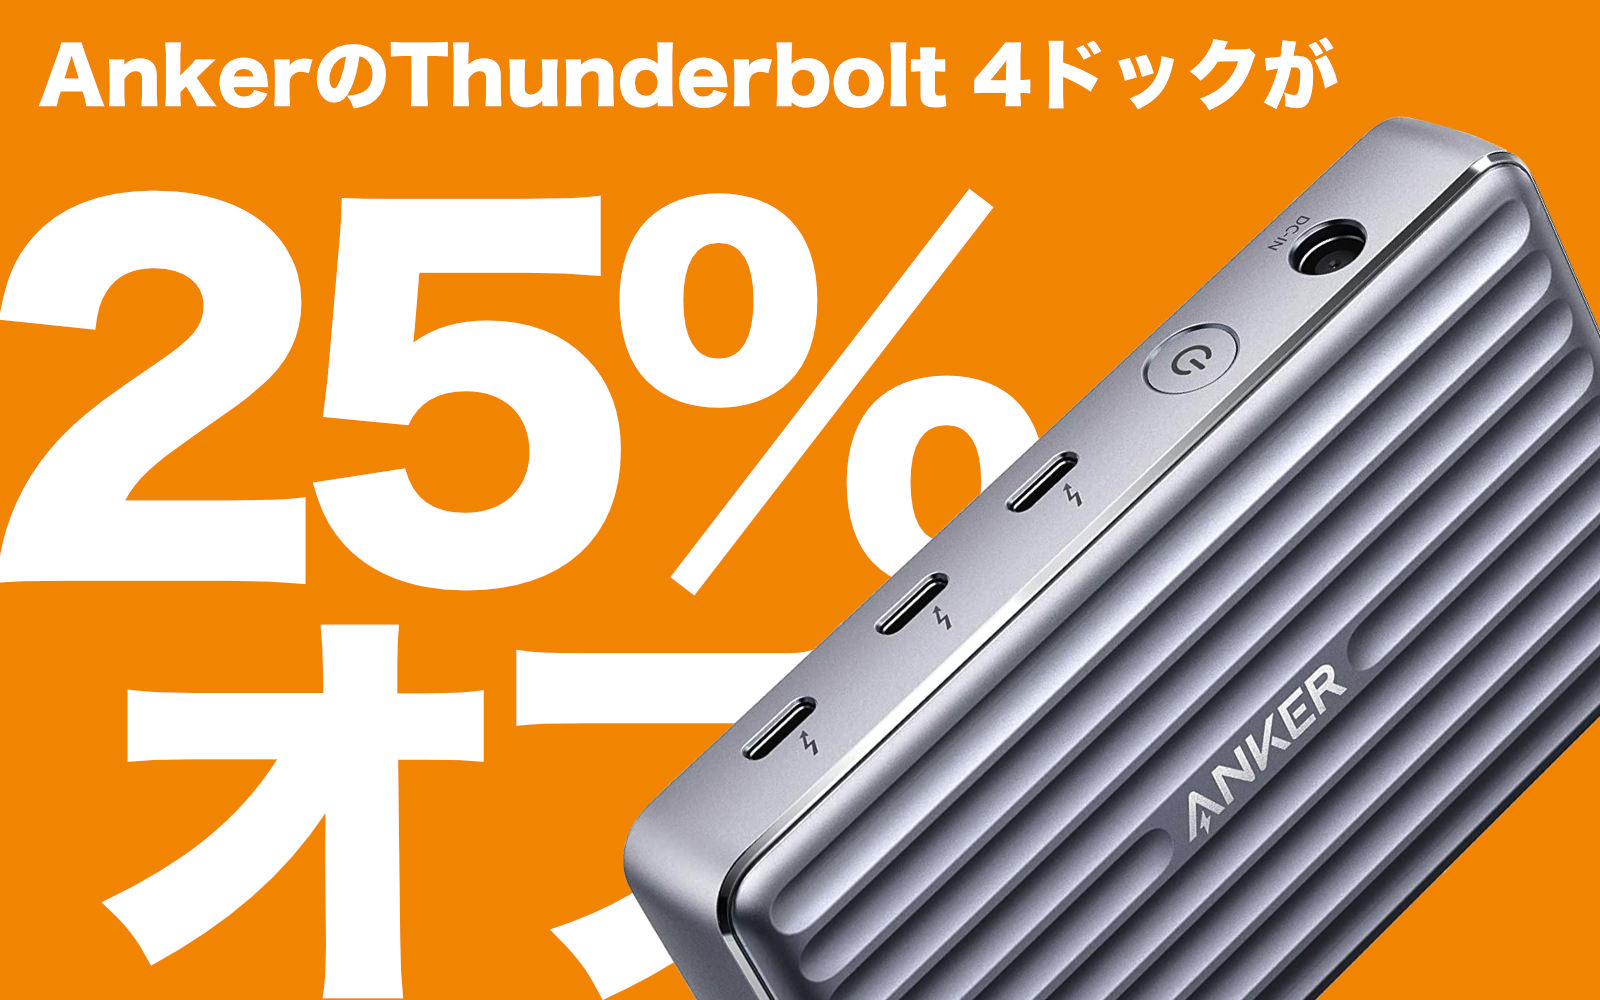 Anker-Thunderbolt4-Dock-on-sale.jpg